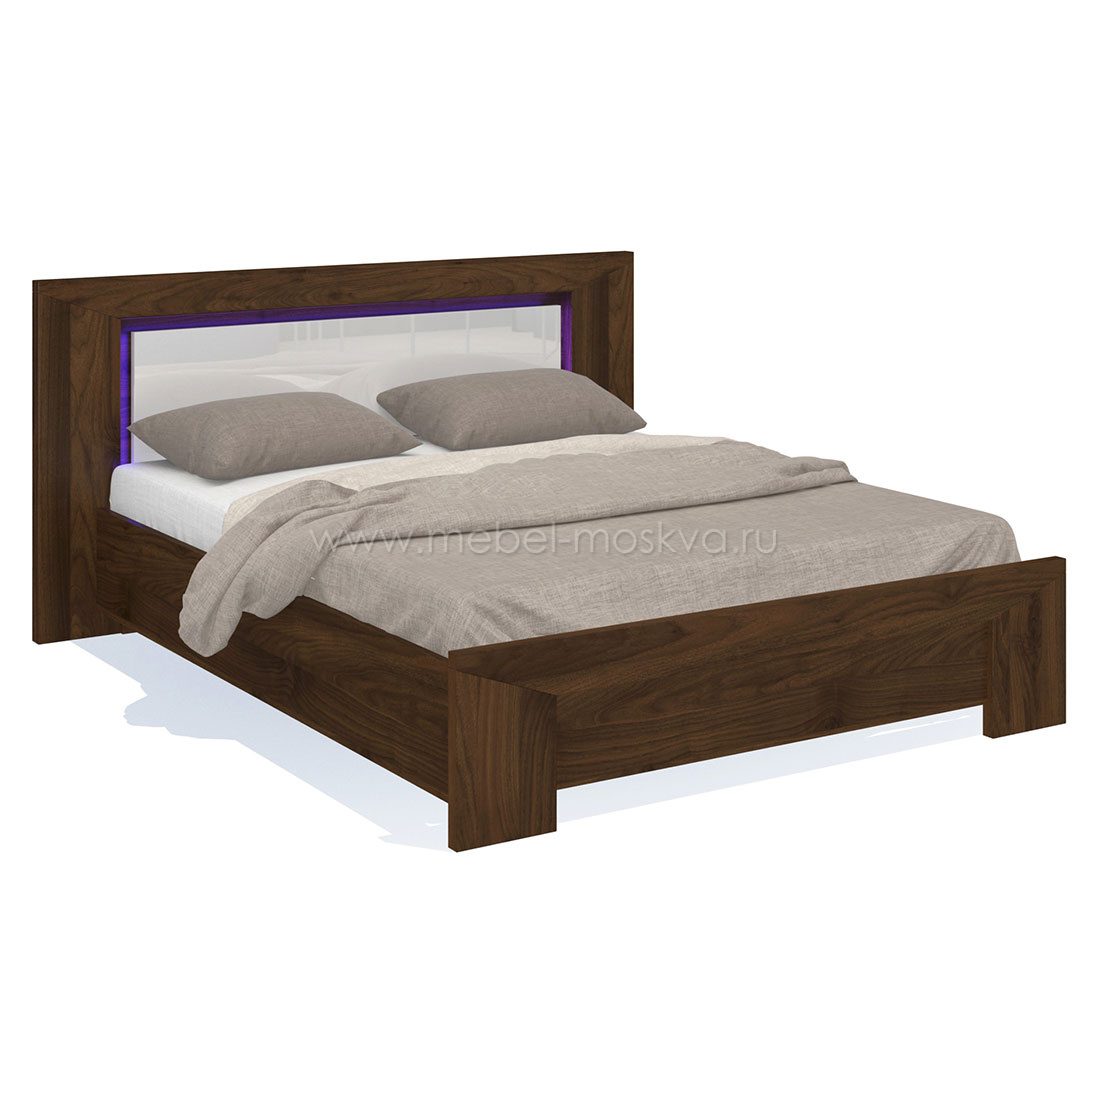 Двуспальная кровать Blade с матрасом (Коламбия/белый глянец)